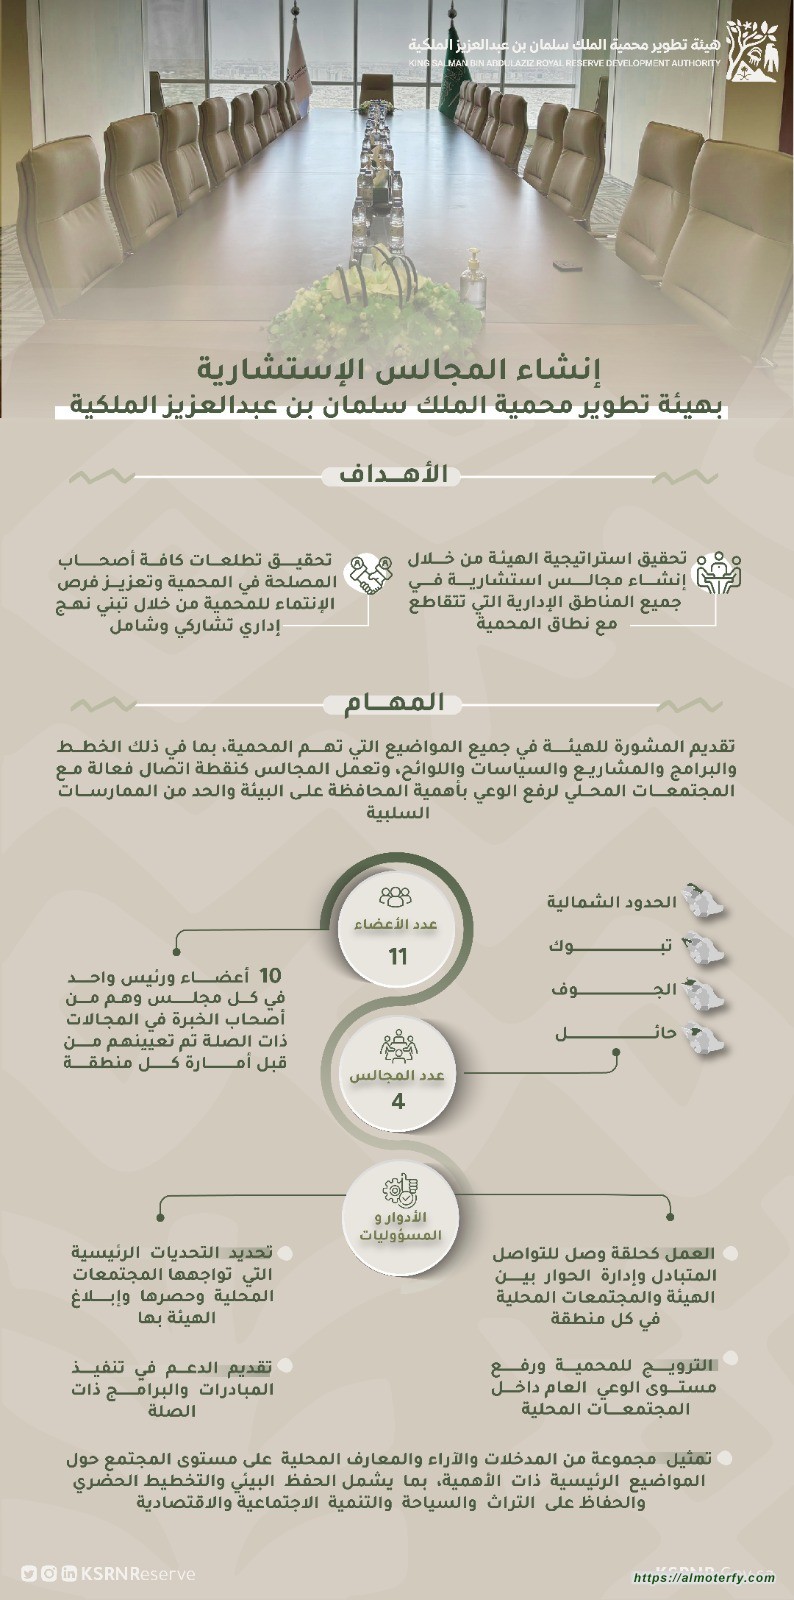 هيئة تطوير محمية الملك سلمان بن عبدالعزيز الملكية تنشأ مجالس استشارية في مناطق المحمية